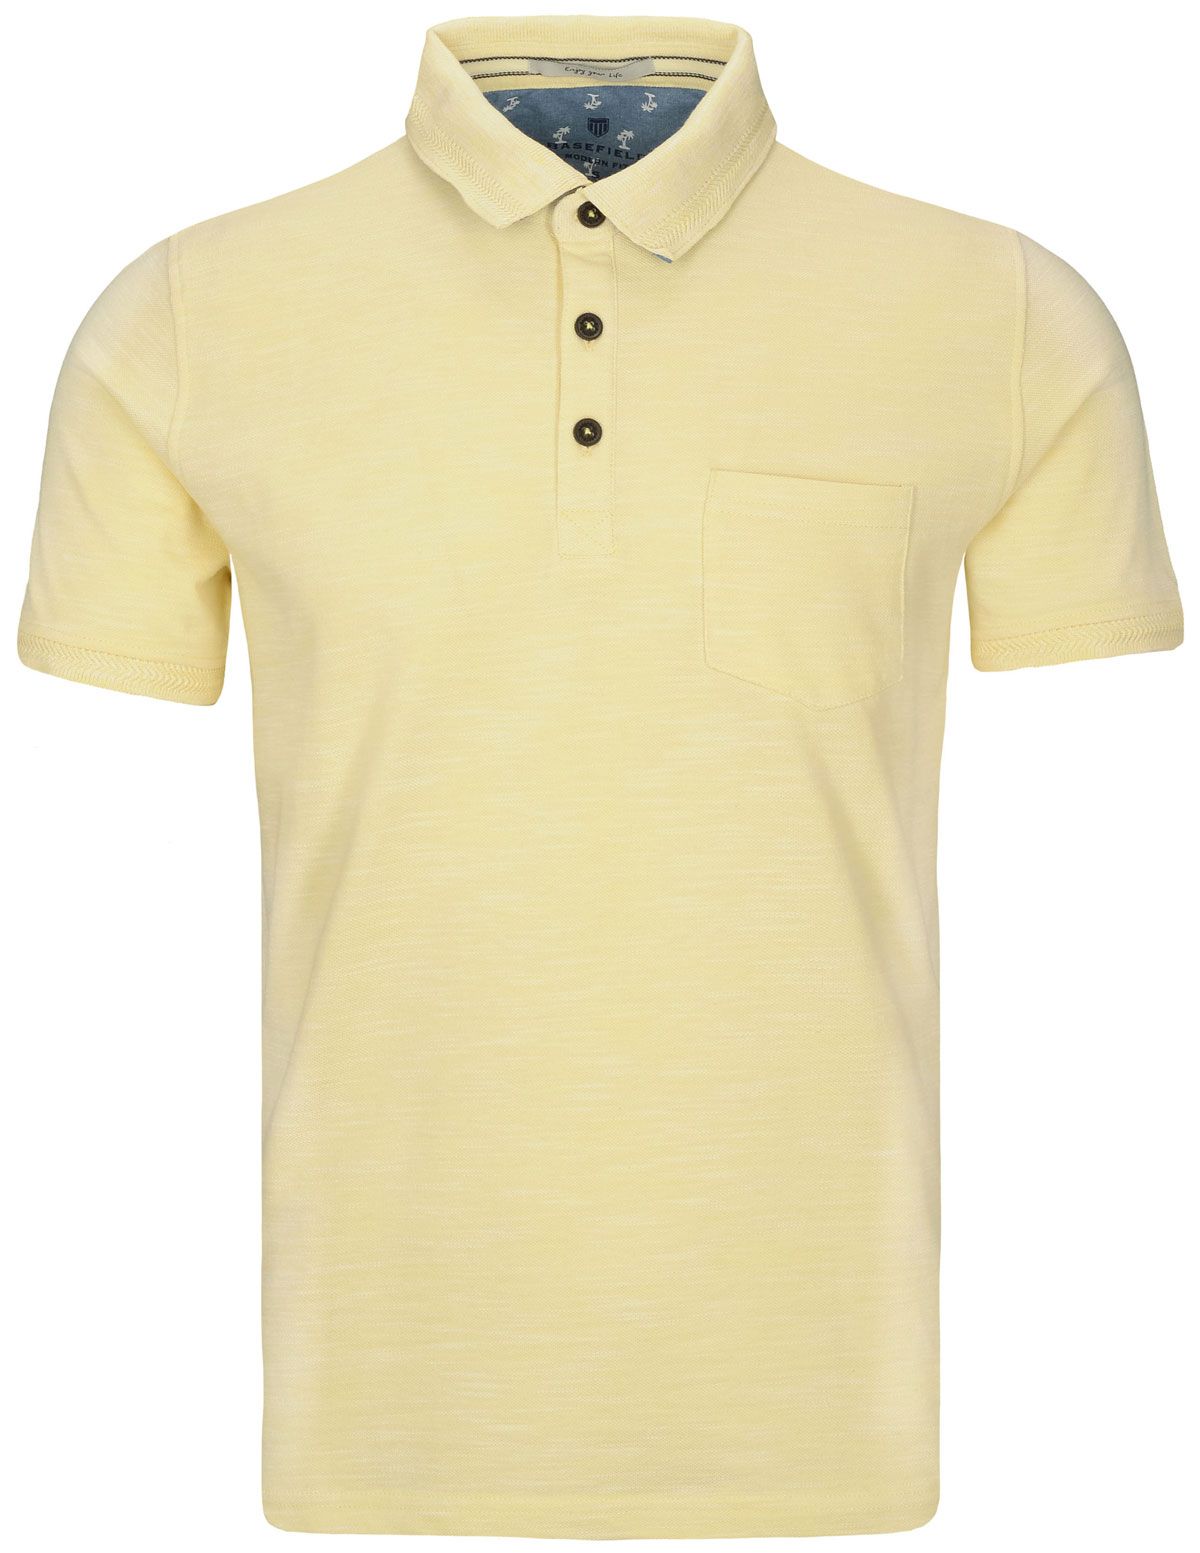 219012624-fresh-lemon__polo-shirt__all